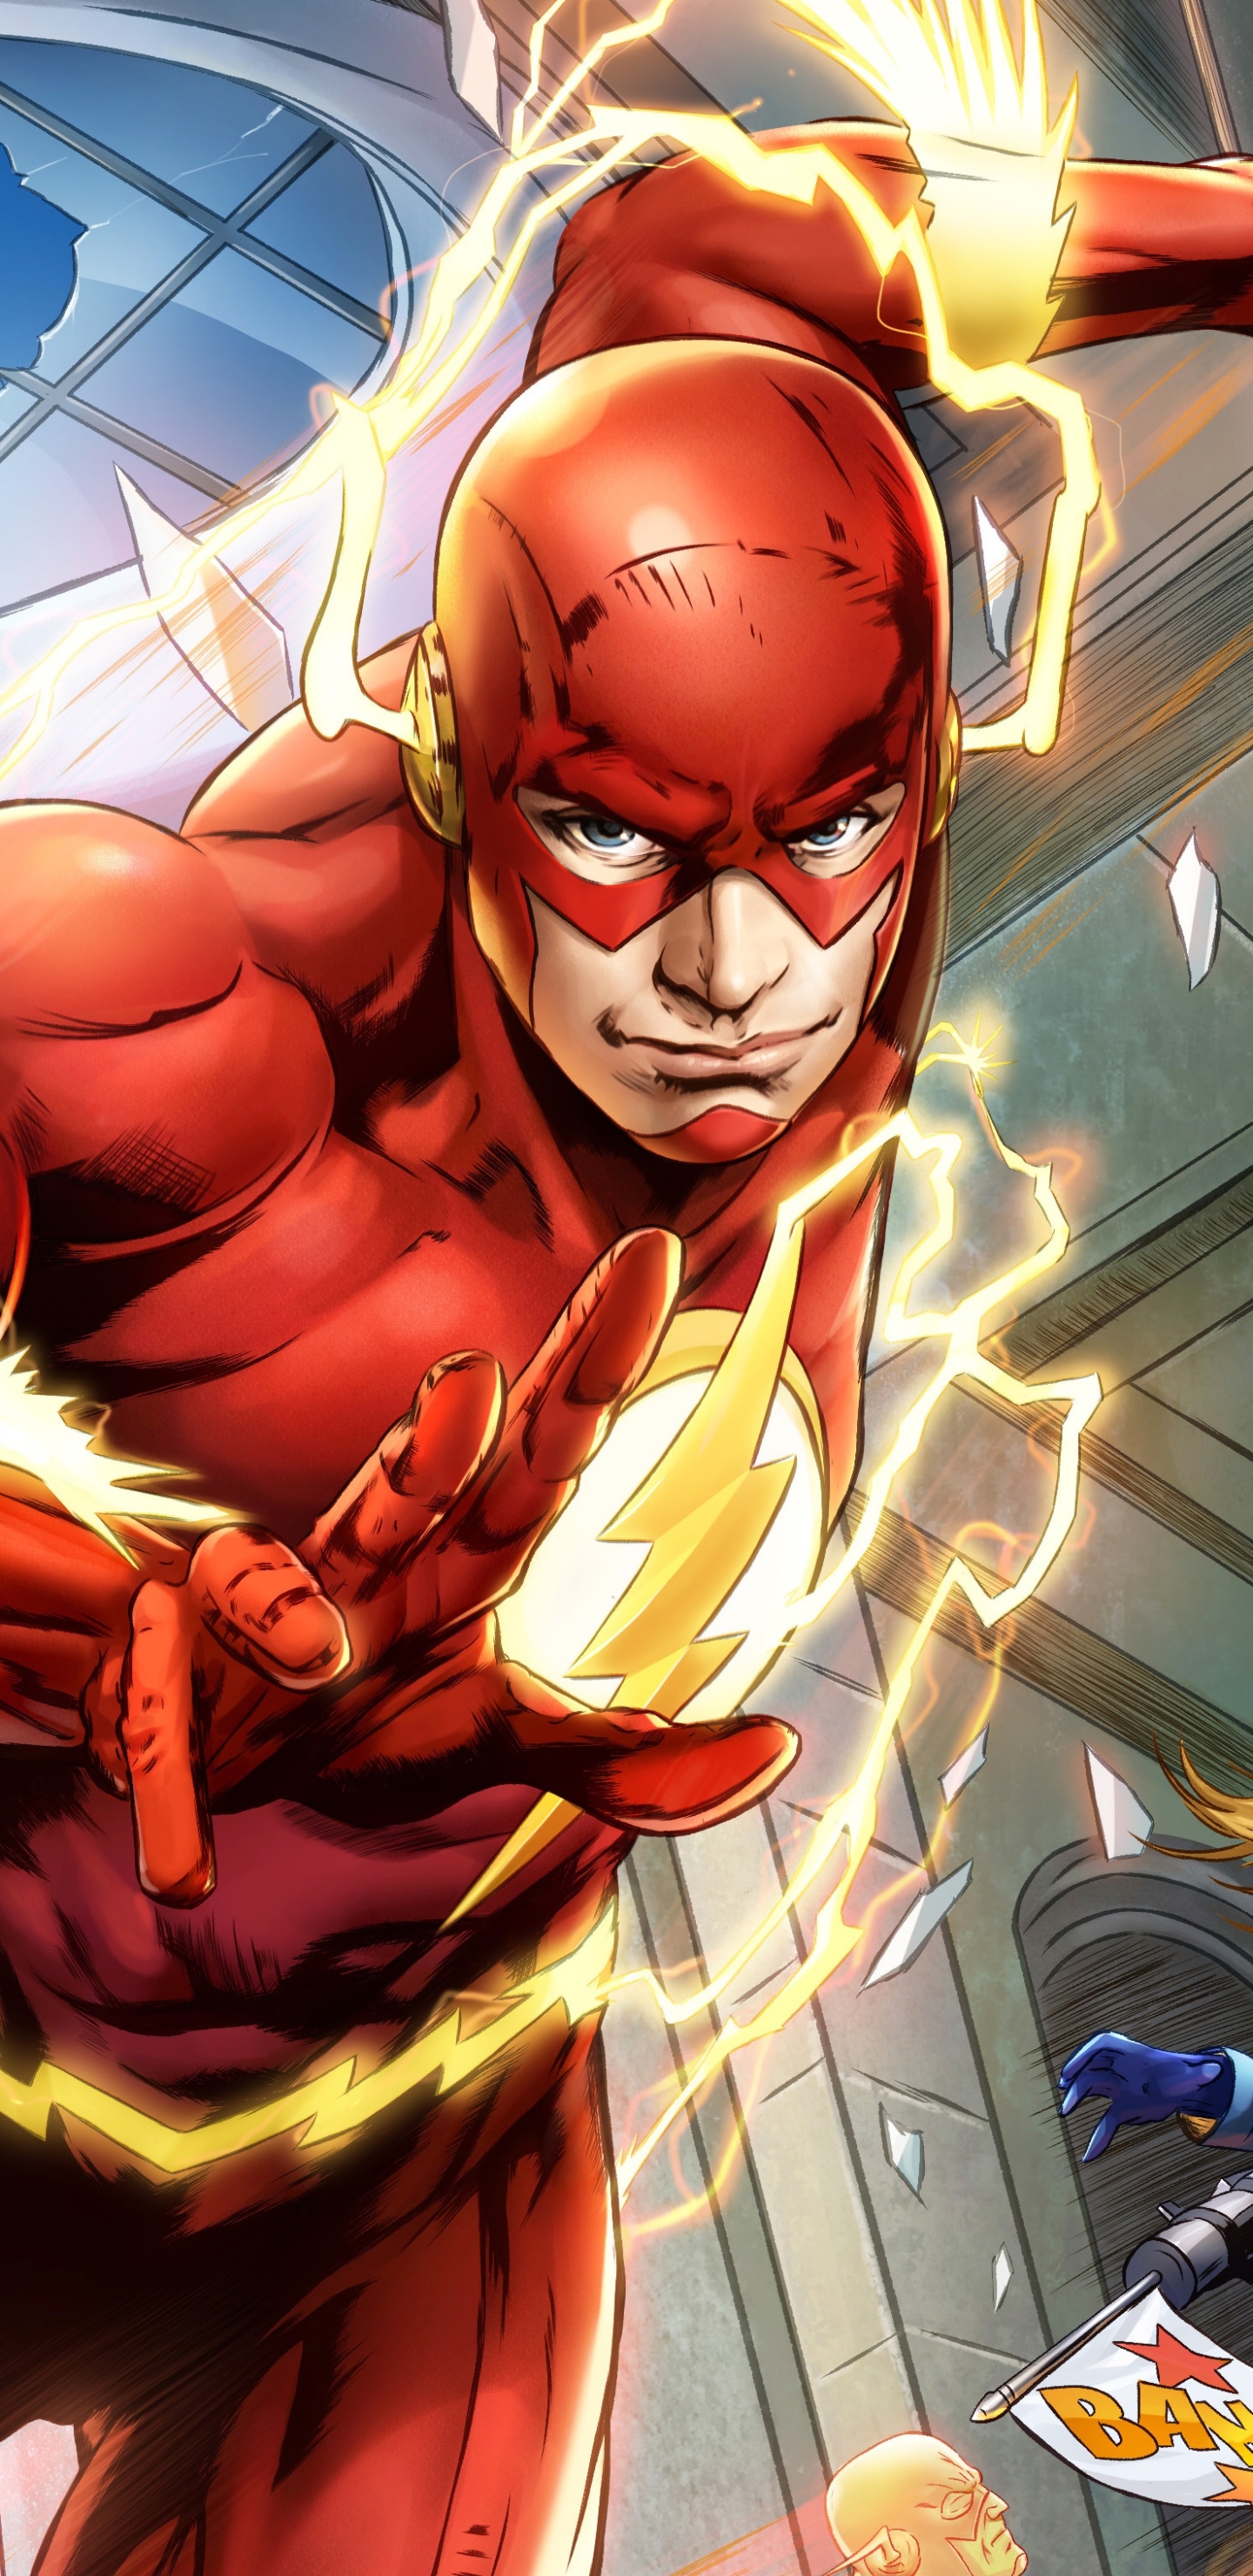 Descarga gratuita de fondo de pantalla para móvil de Destello, Historietas, Dc Comics, The Flash.